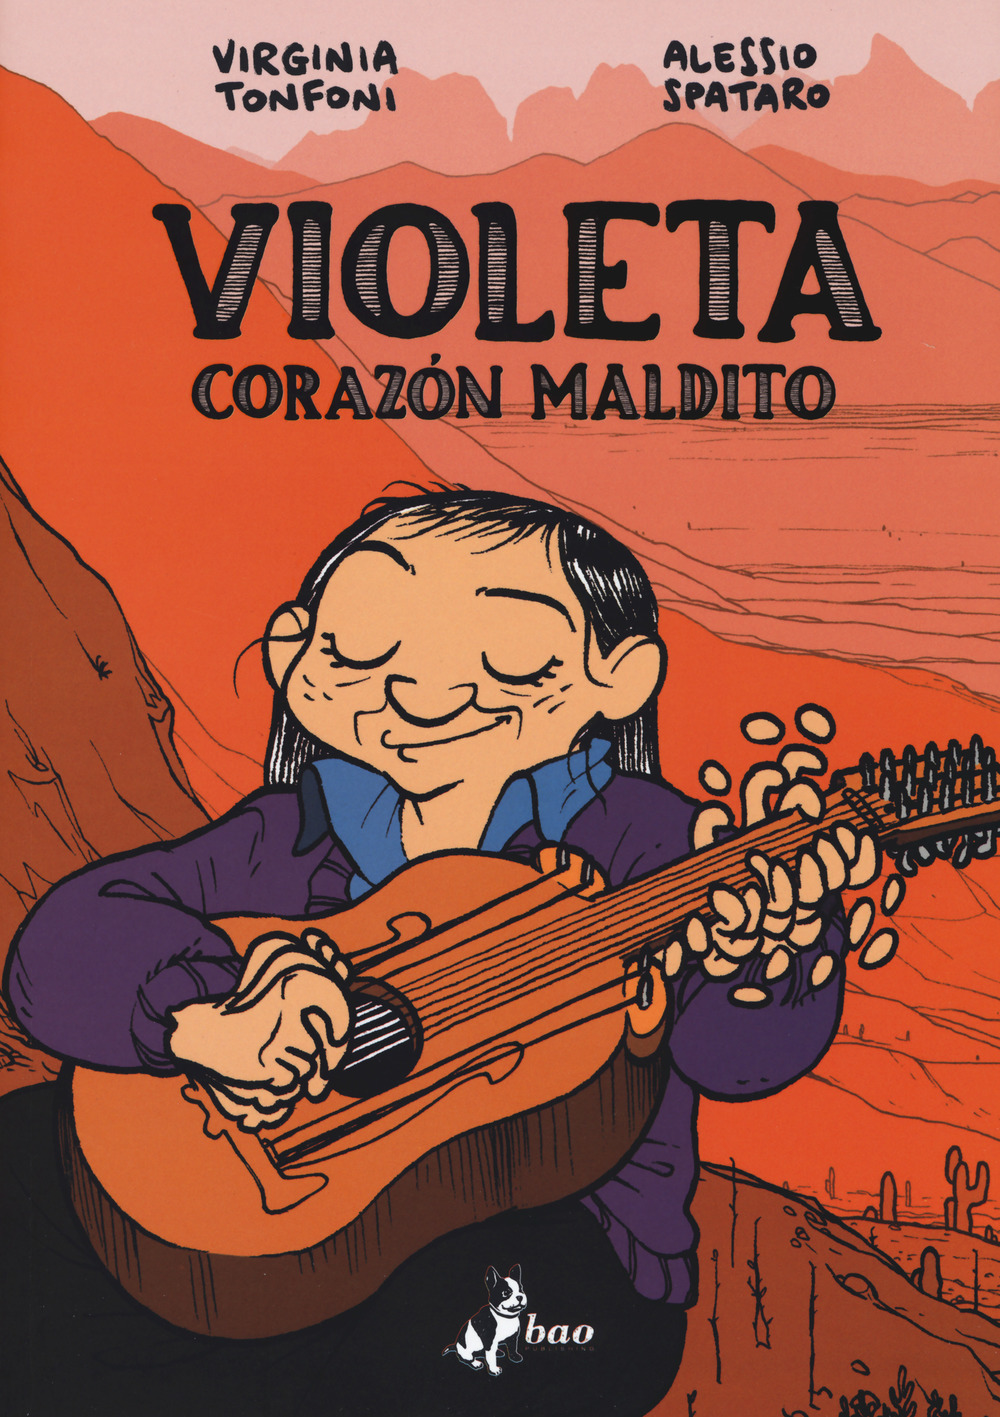 Virginia Tonfoni / Alessio Spataro - Violeta. Corazon Maldito